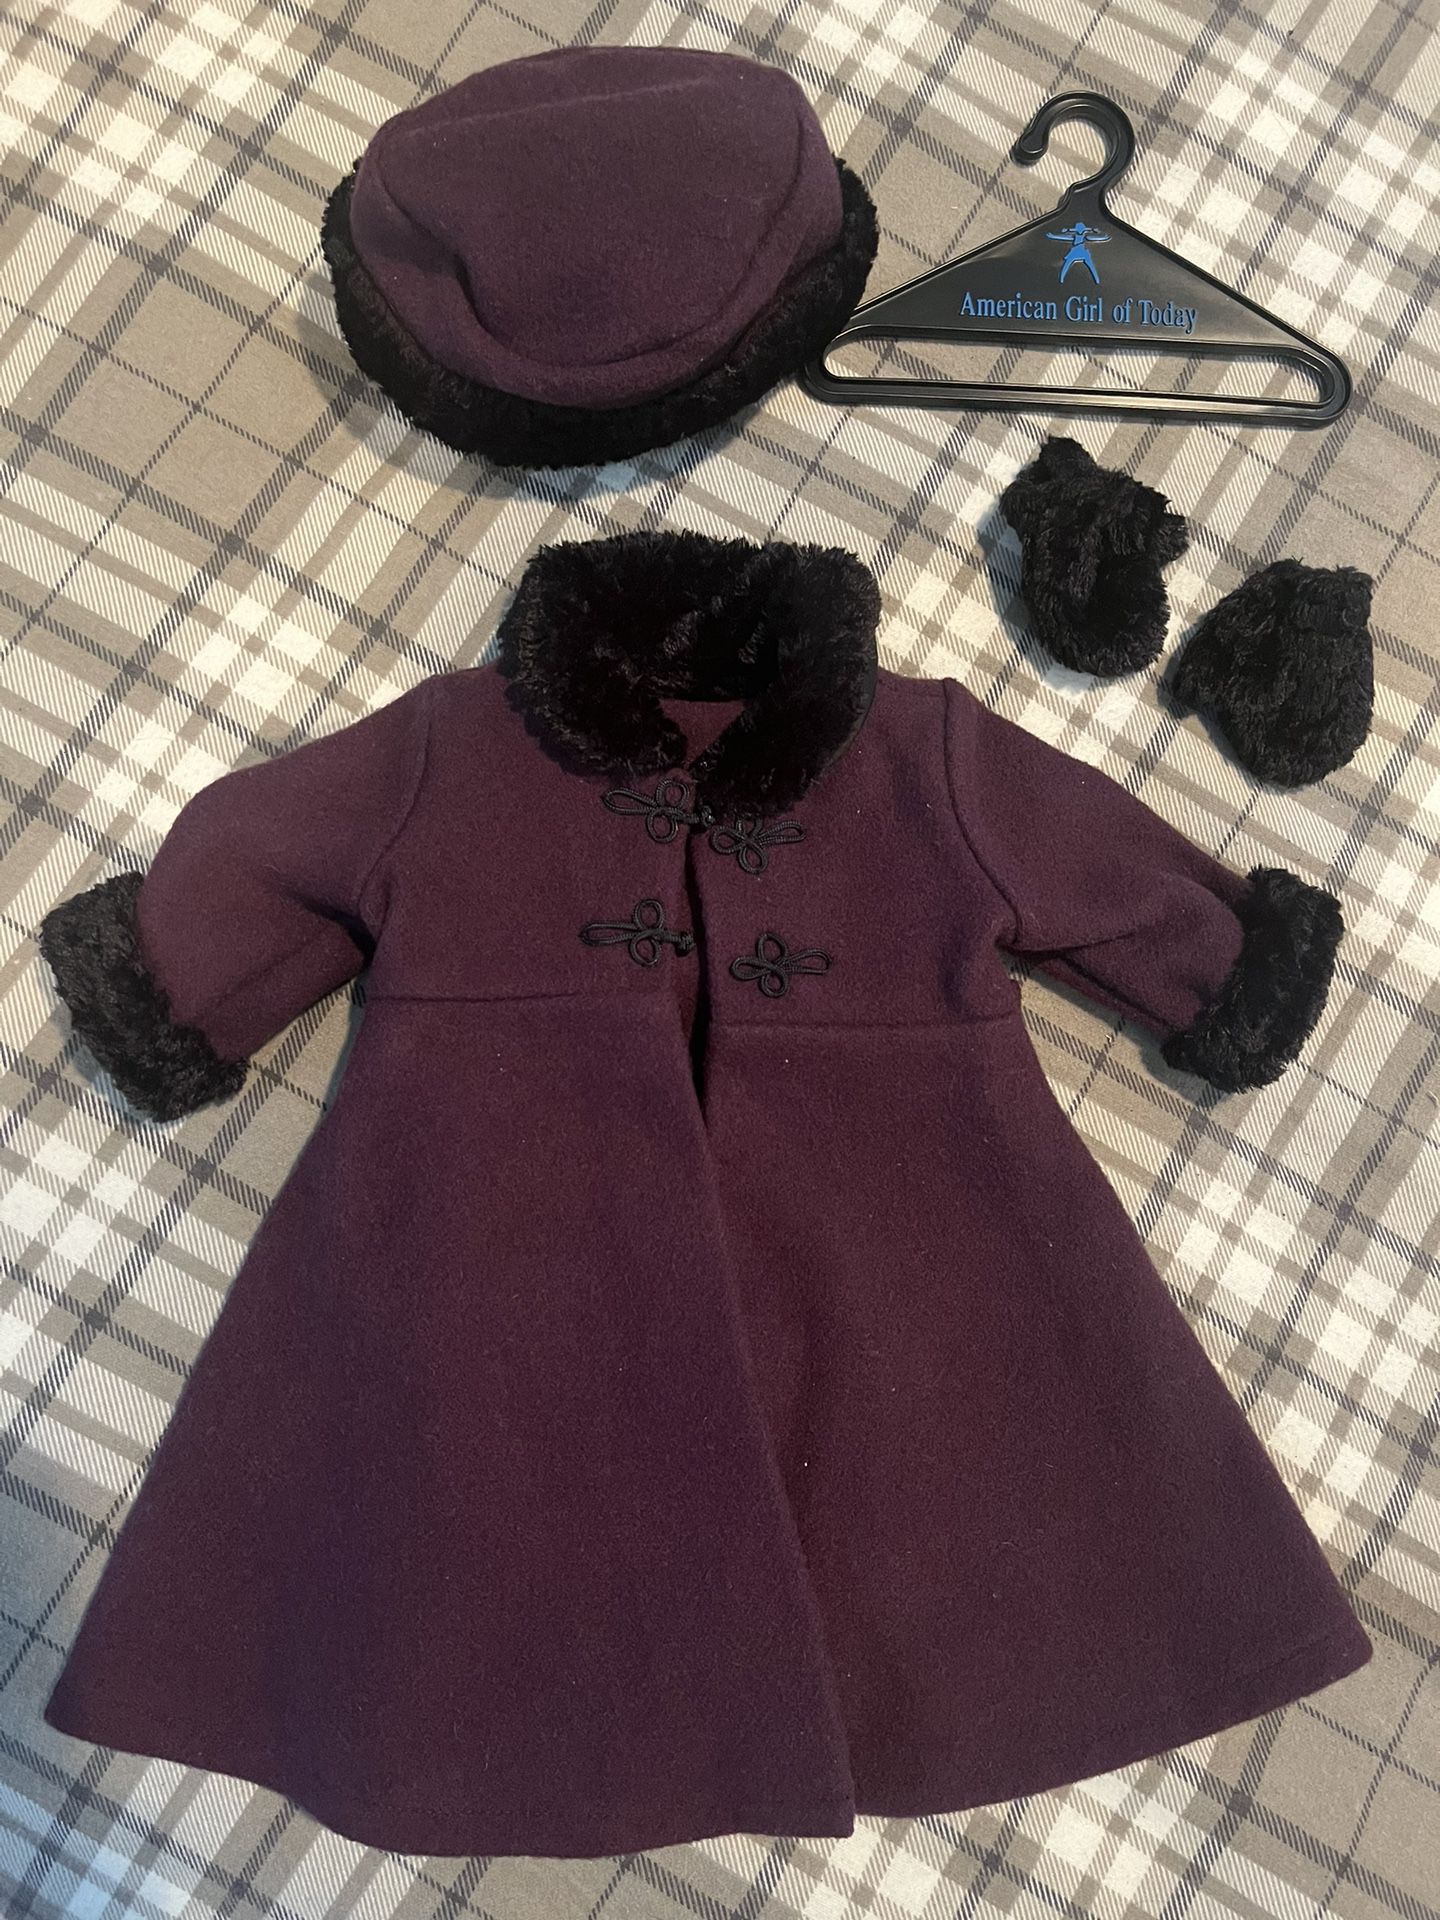 Vintage American Girl Doll Coat, Hat, & Gloves Set